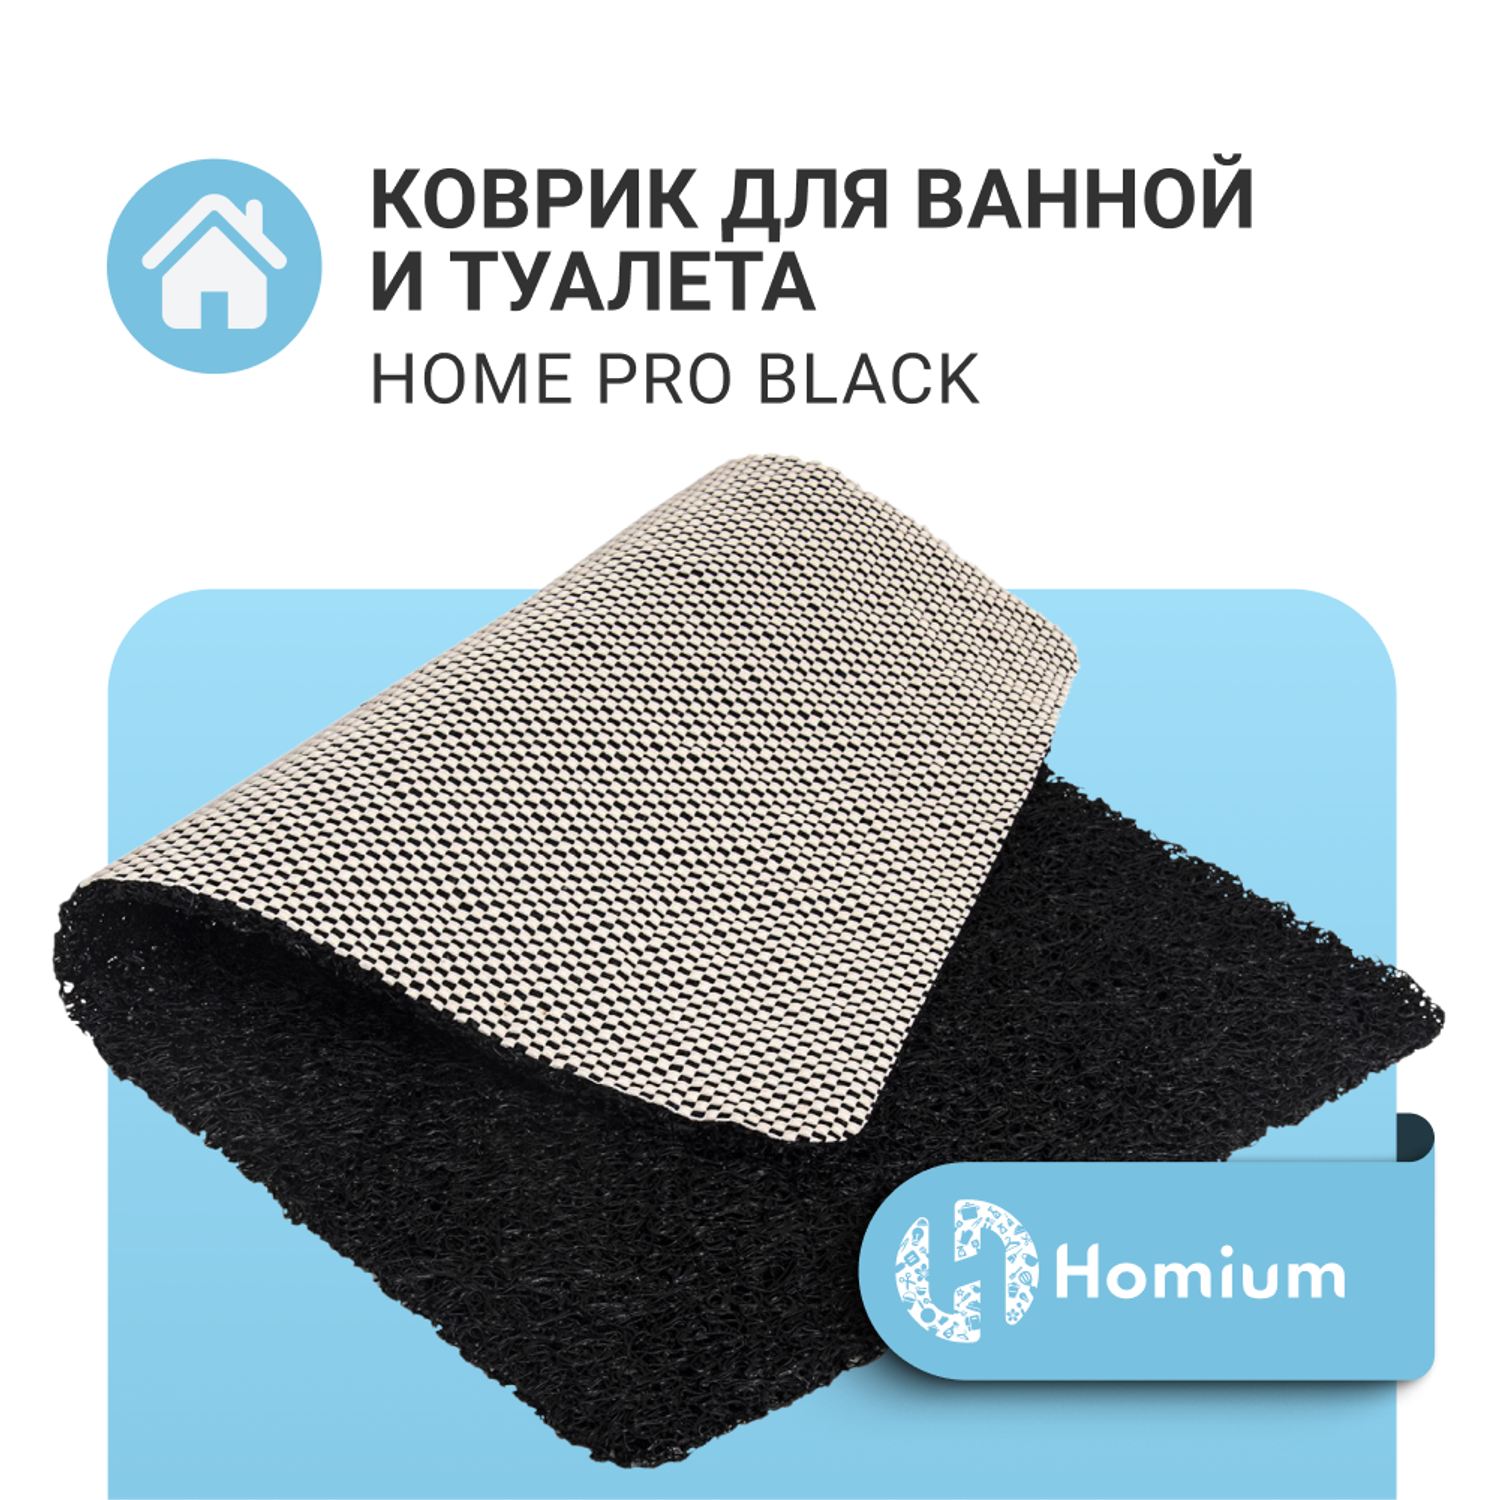 Коврик для ванной ZDK Homium Home Pro цвет черный 58*38 см - фото 2